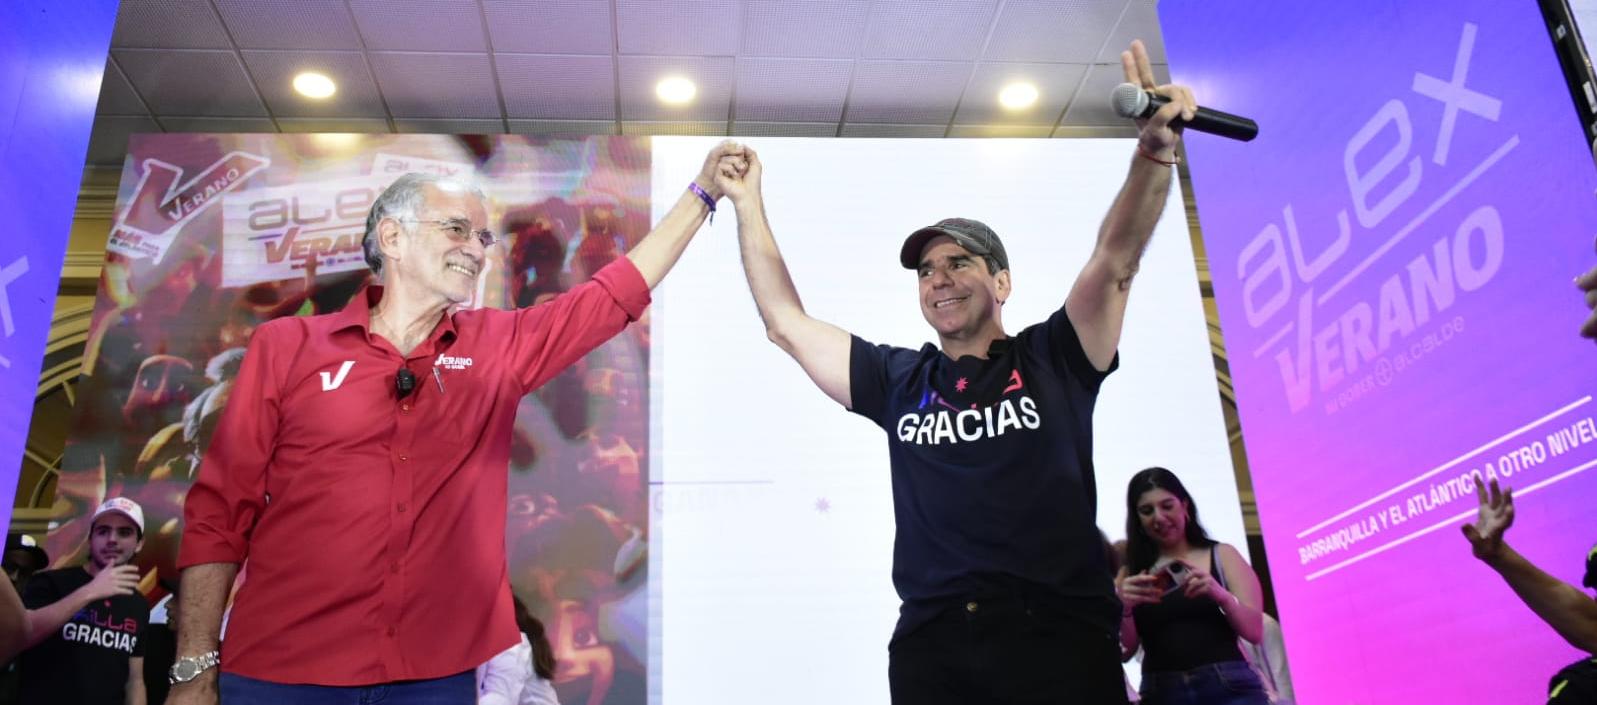 Eduardo Verano, Gobernador electo del Atlántico, y Alex Char, Alcalde electo de Barranquilla.